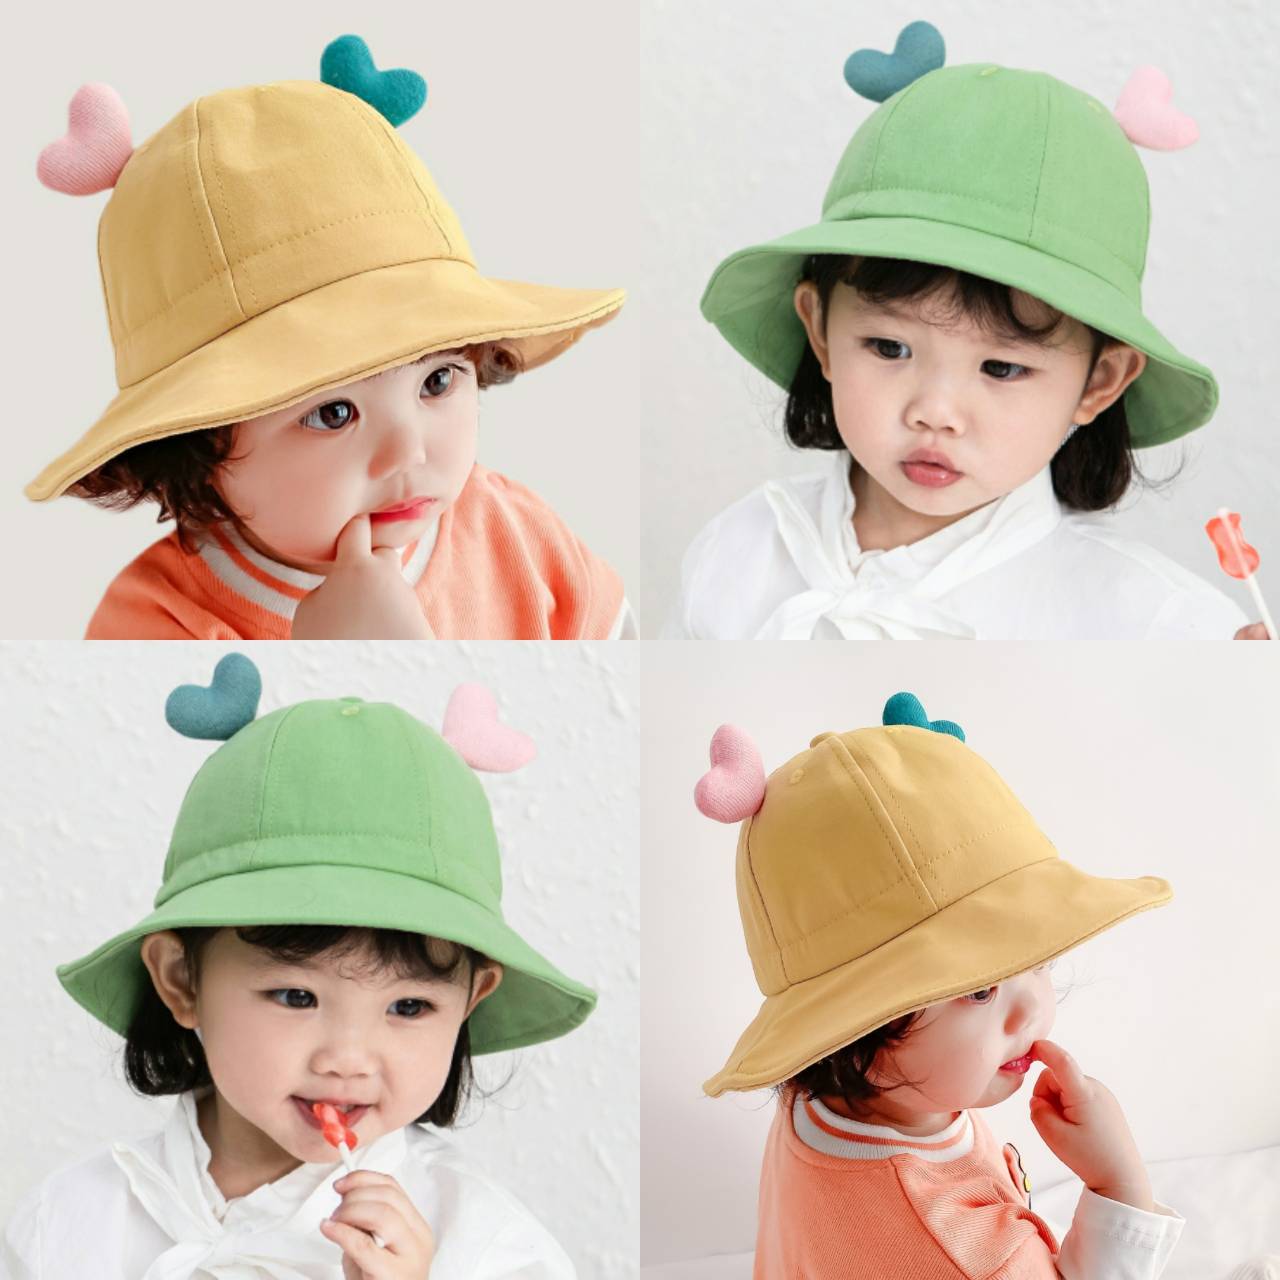 ☆พร้อมส่ง☆หมวกเด็ก 4เดือน - 2ปี หมวกเด็กอ่อน หมวกปีกรอบเด็ก หมวกบักเก็ตเด็ก หมวก Bucket หมวกเด็กหญิง หมวกเด็กกันแดด สีพื้นแต่ง รอบหัว 47-49 cm.